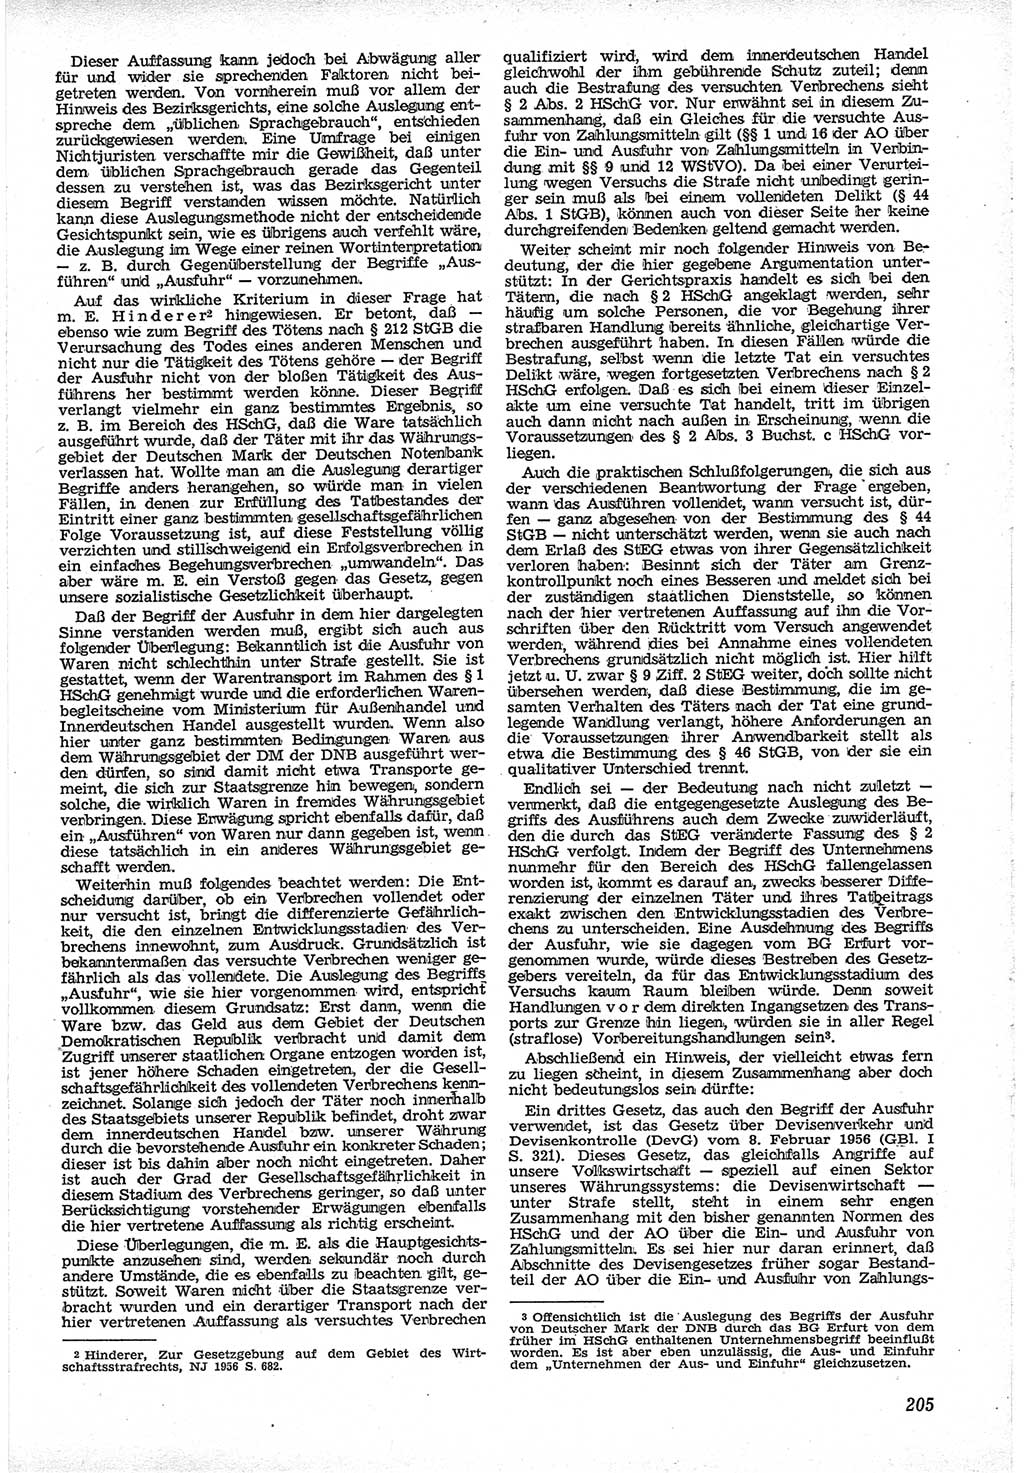 Neue Justiz (NJ), Zeitschrift für Recht und Rechtswissenschaft [Deutsche Demokratische Republik (DDR)], 12. Jahrgang 1958, Seite 205 (NJ DDR 1958, S. 205)